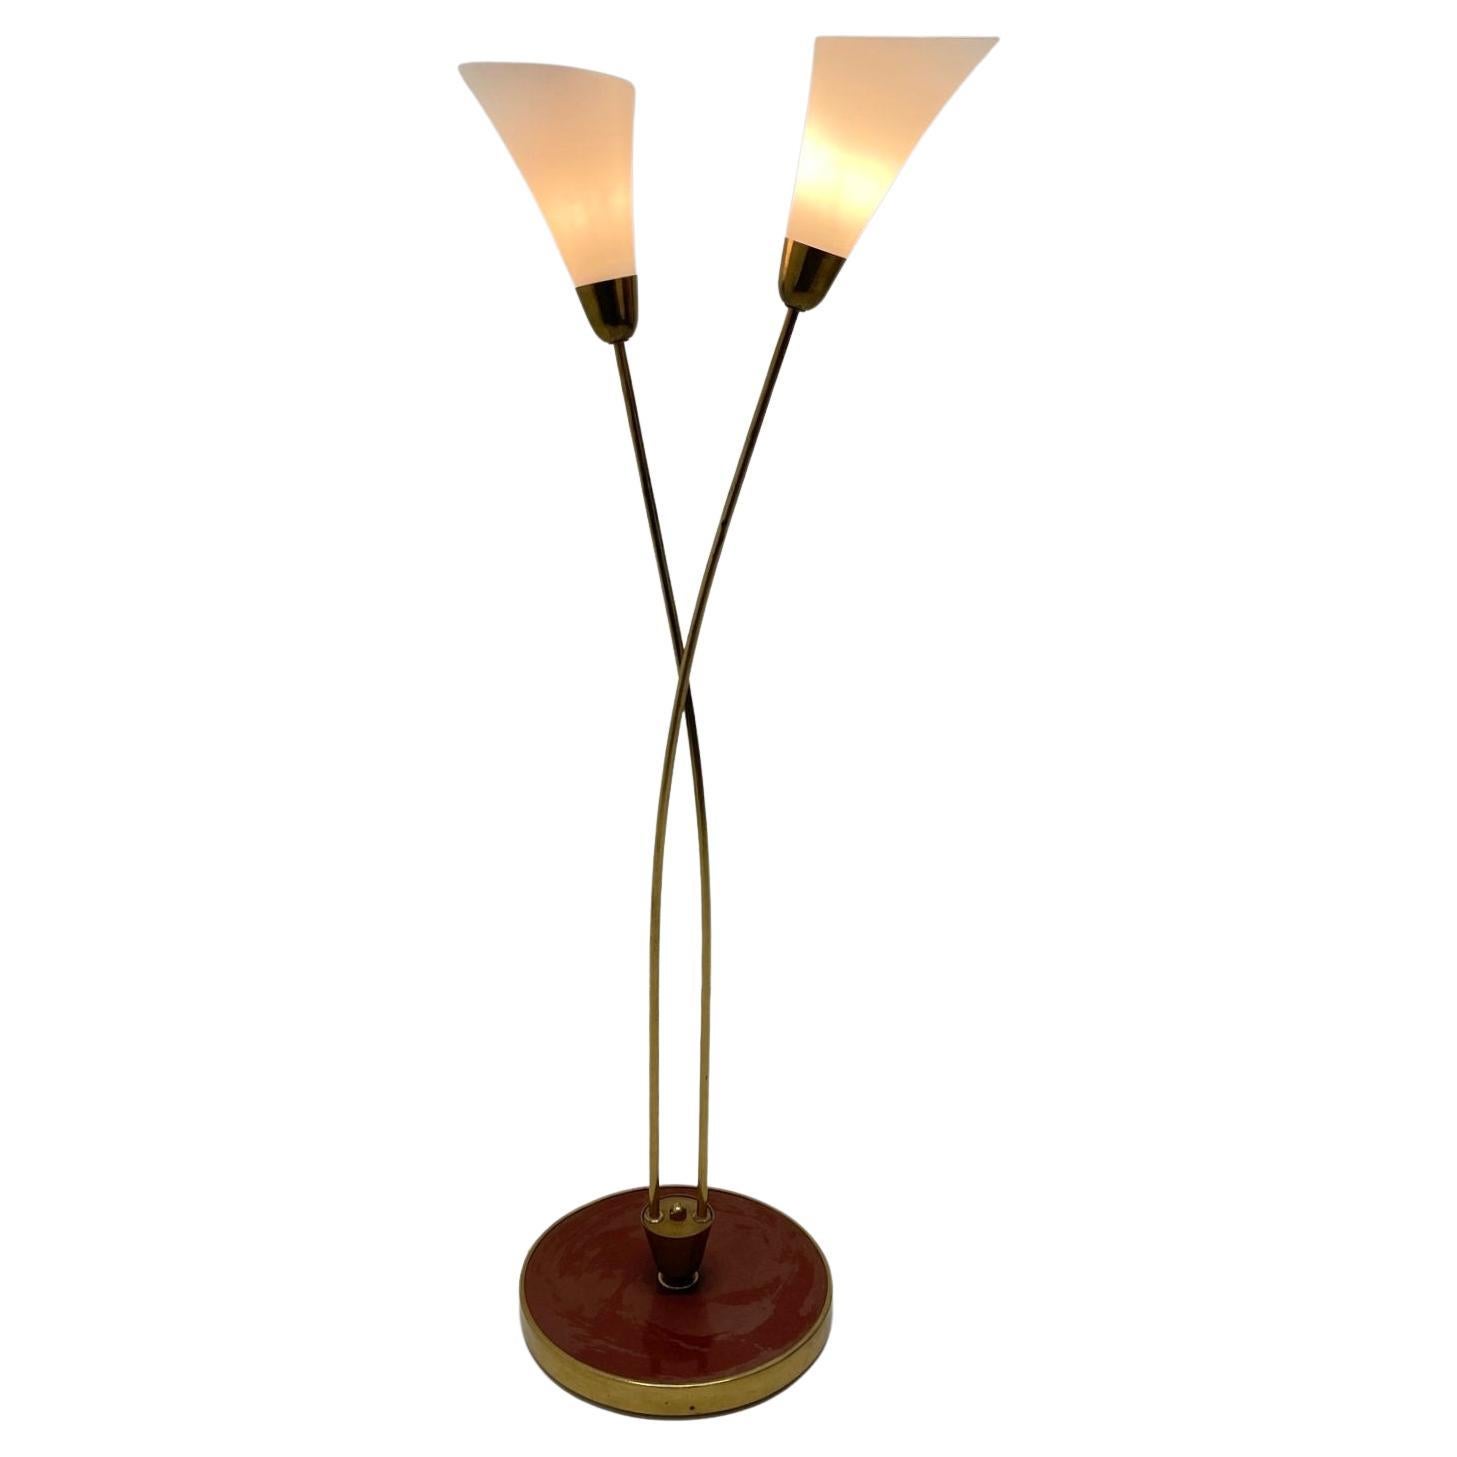 Art Deco Brass Floor Lamp, 1930's